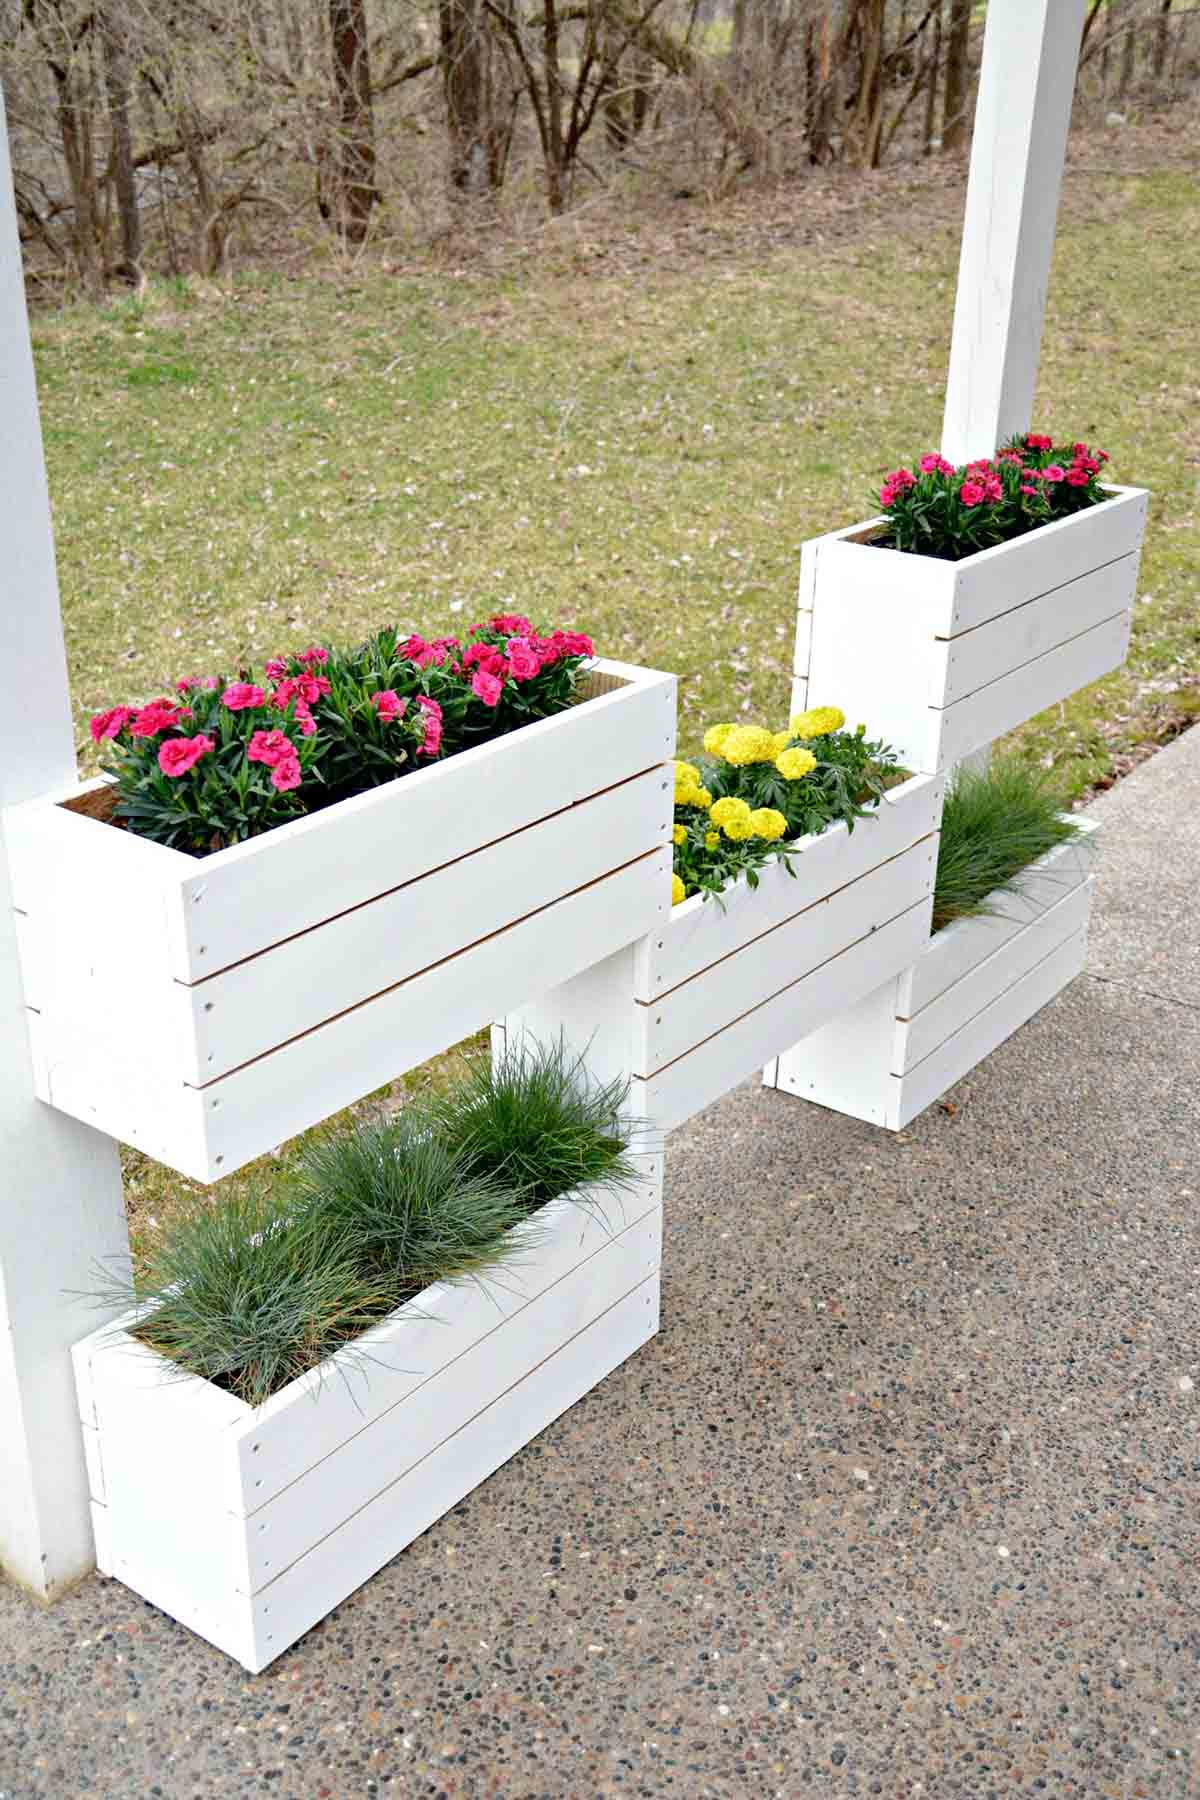 Best ideas about DIY Pallet Planter Box
. Save or Pin 32 Best DIY Pallet and Wood Planter Box Ideas and Designs Now.